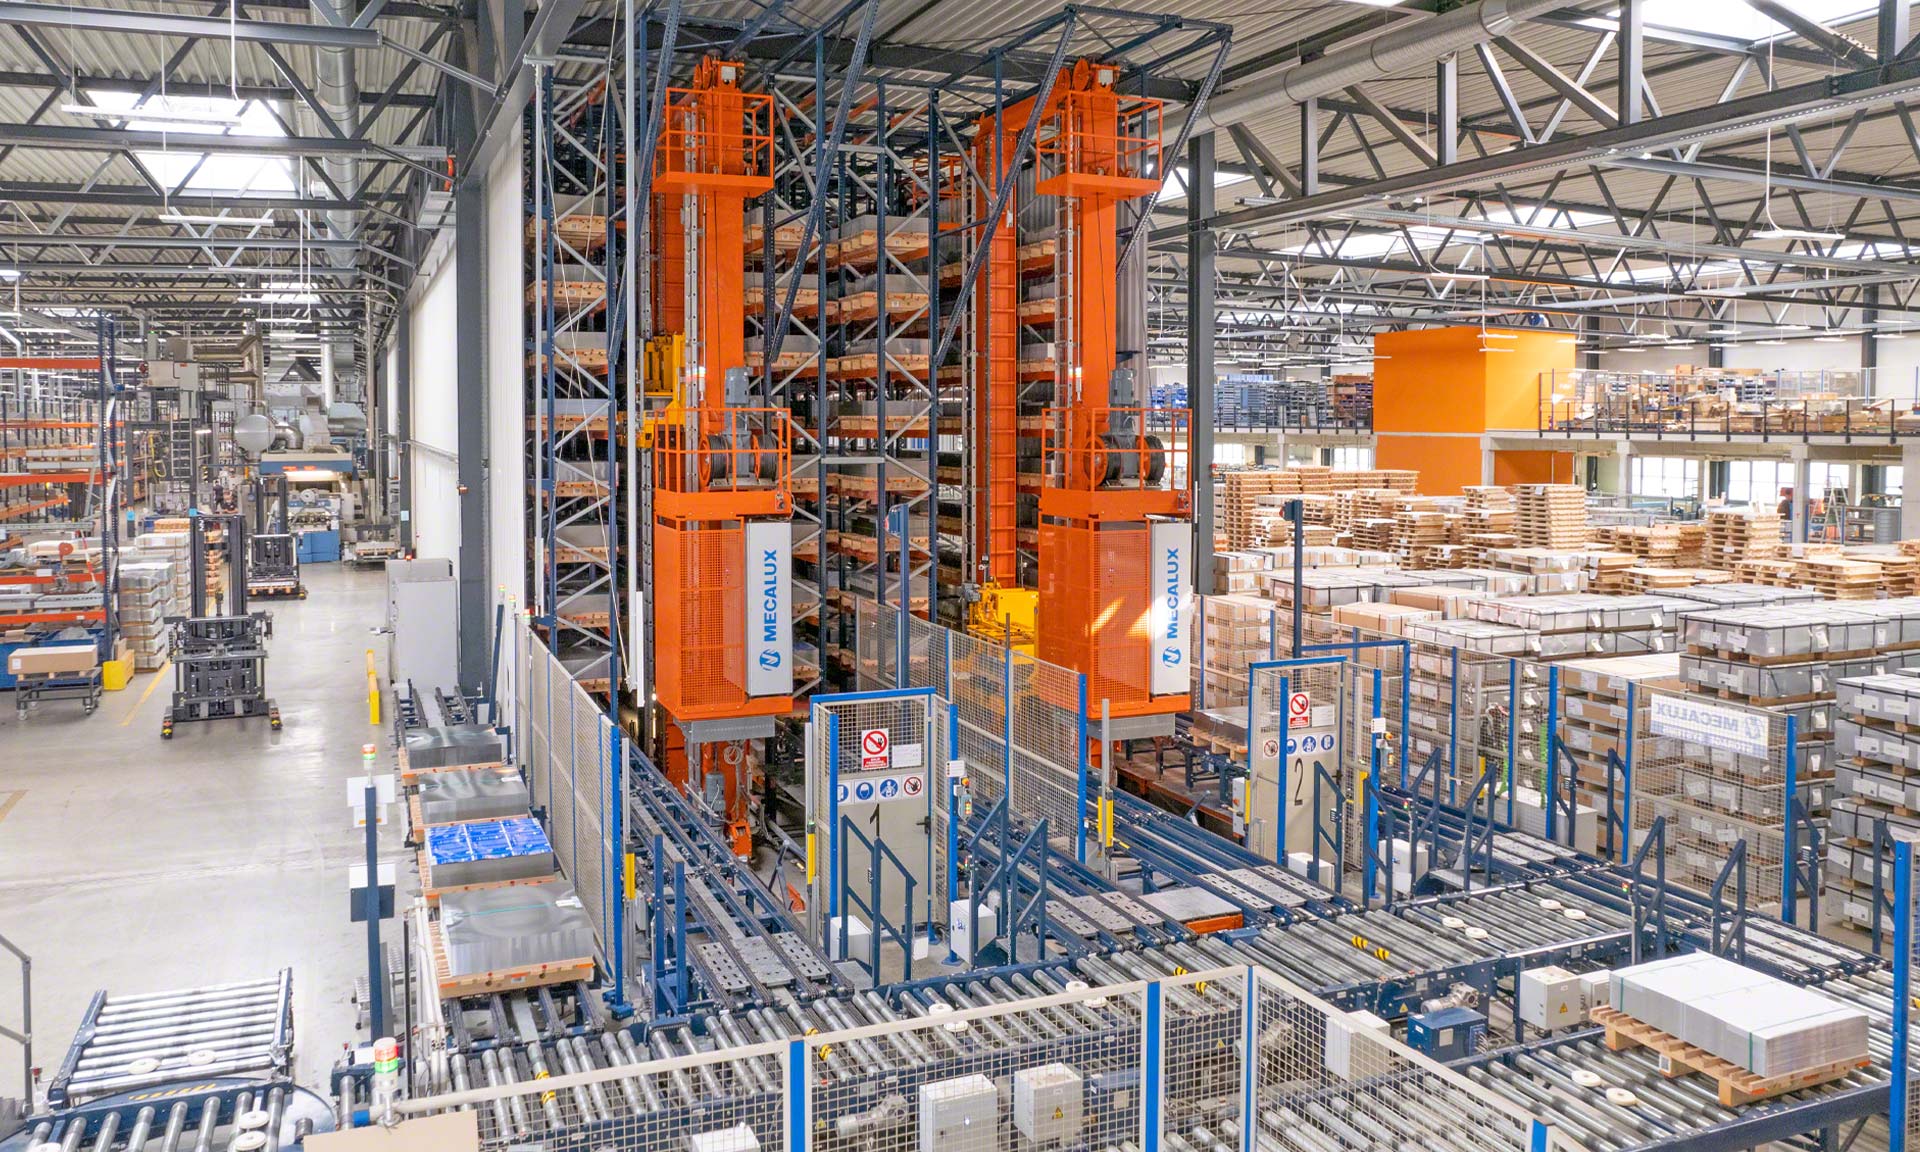 Blechwarenfabrik : l’usine de contenants métalliques la plus moderne d’Europe